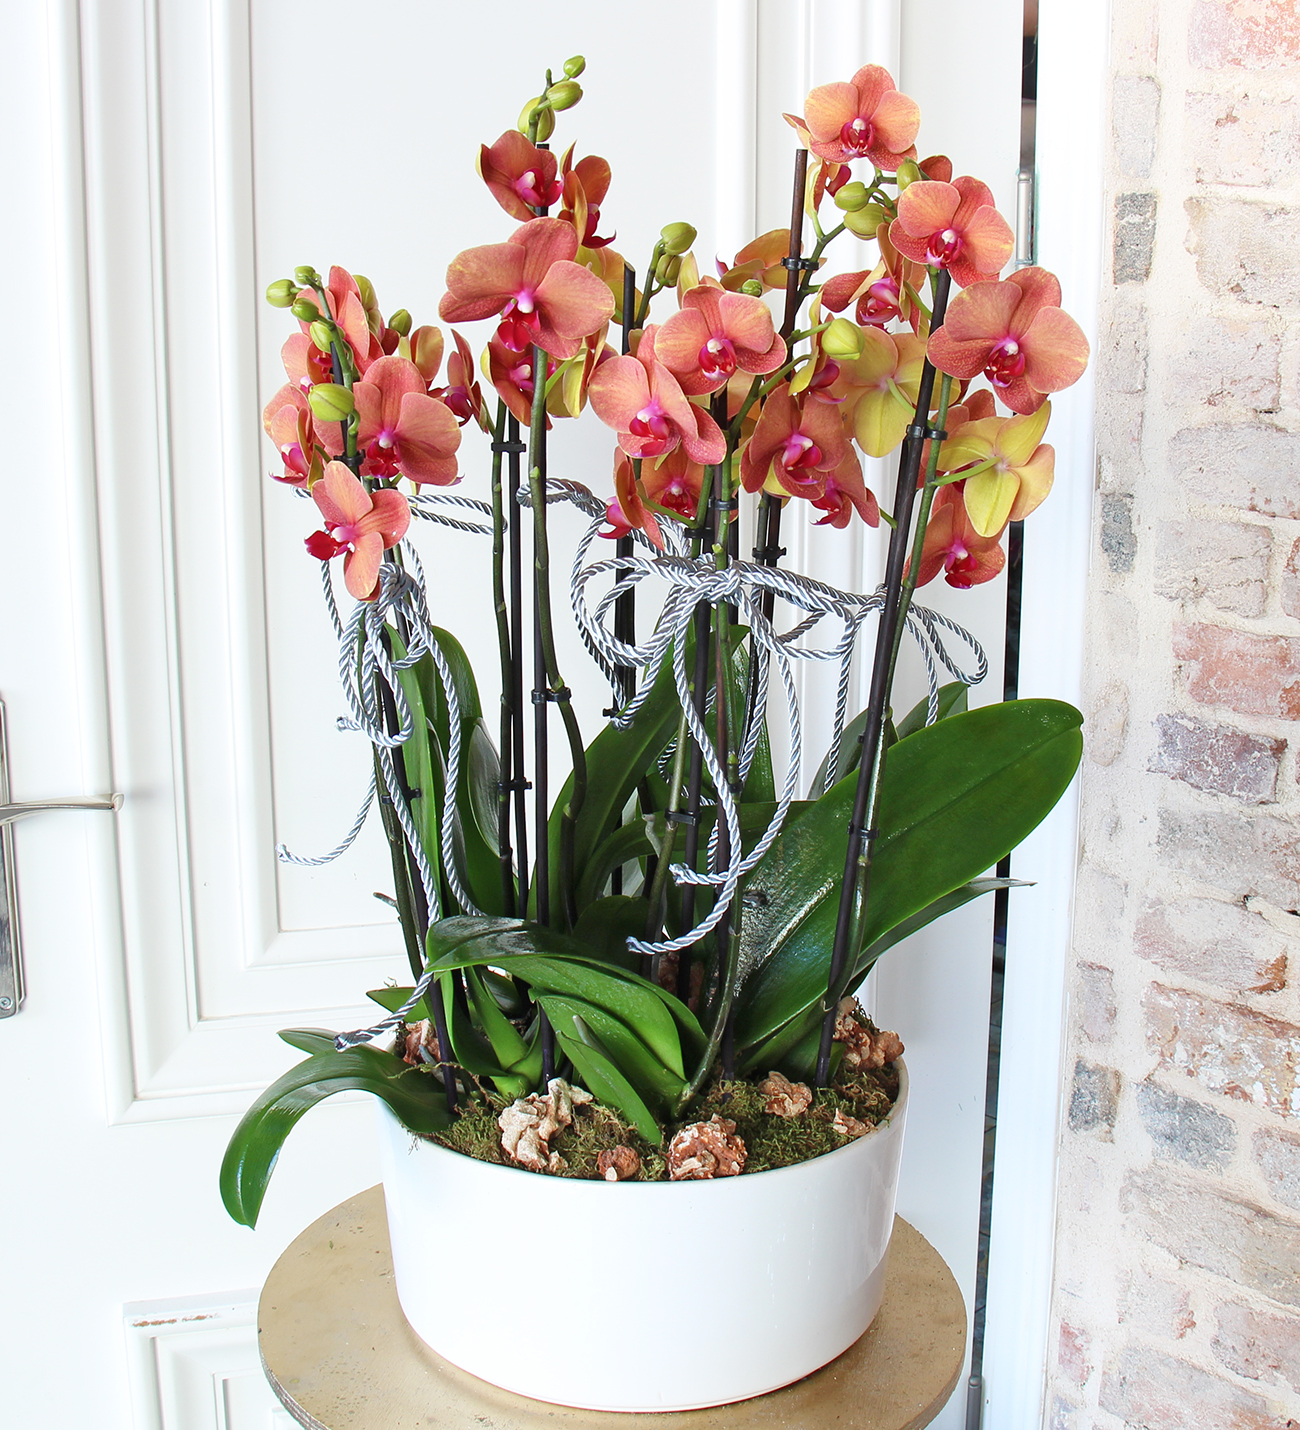 Matila seramik vazo da 8 dallı ateş rengi turuncu orkide tasarımı